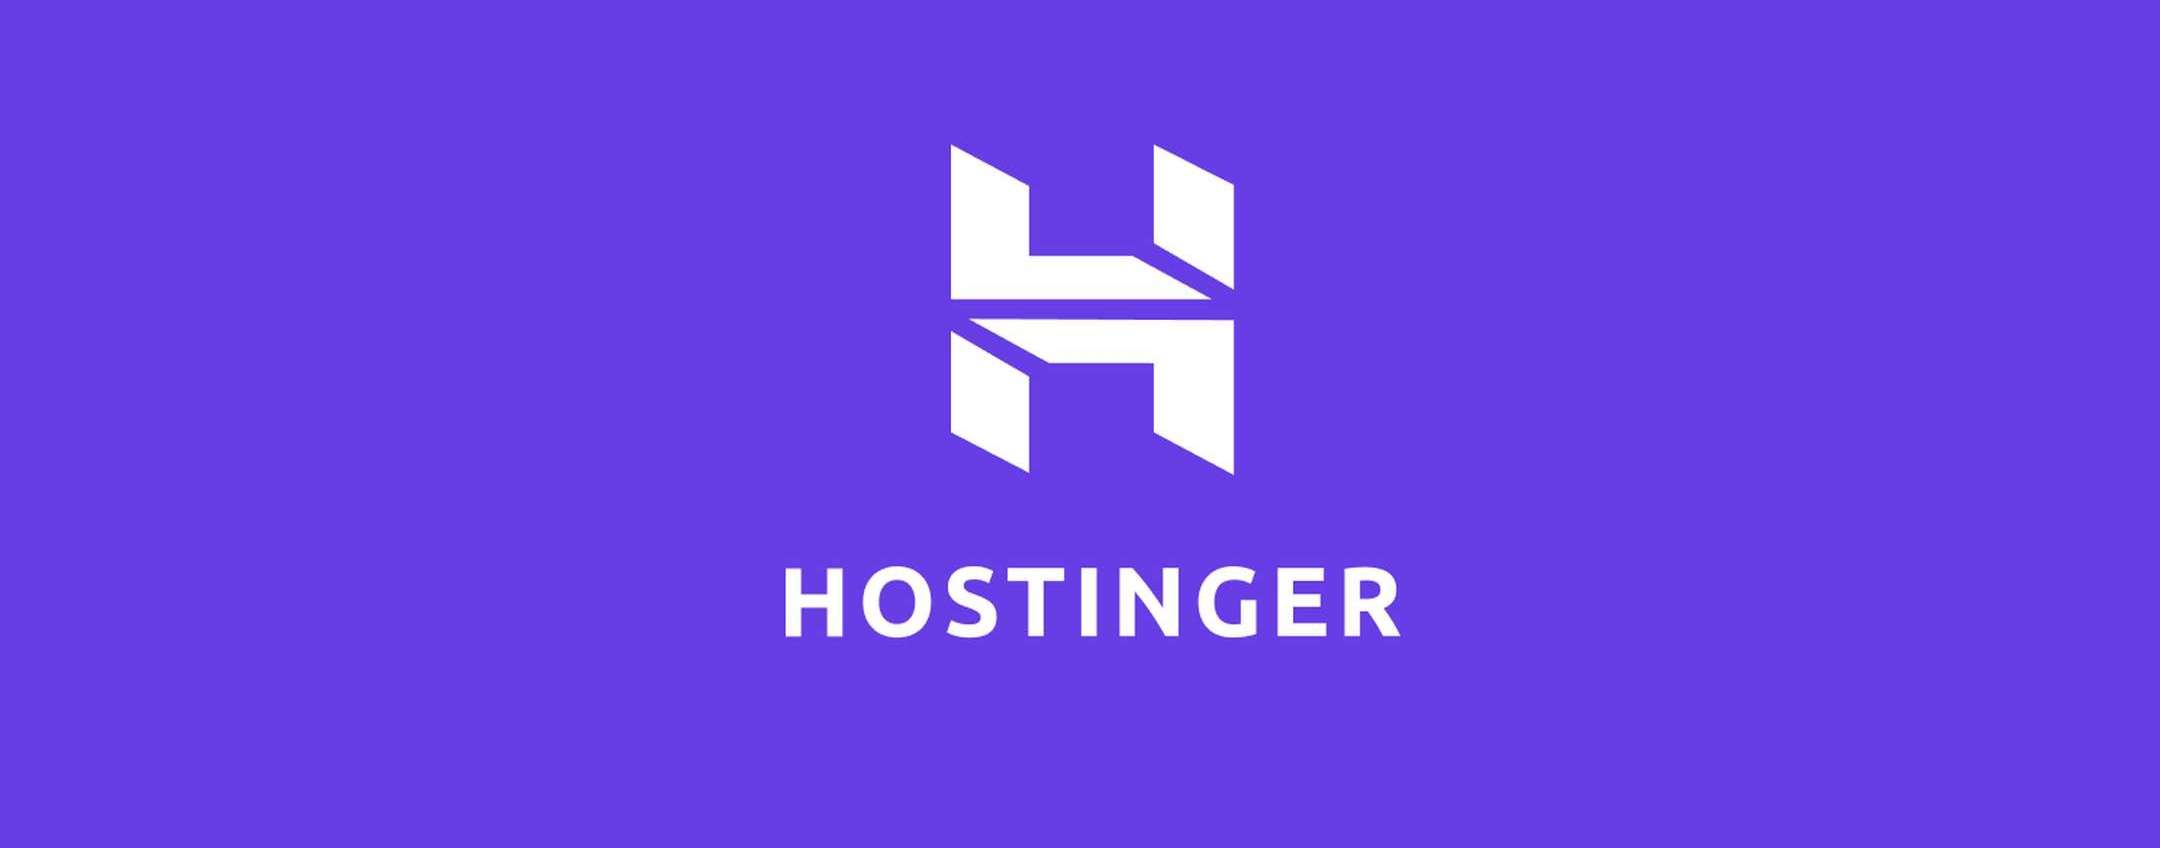 web hosting da 0,99 euro